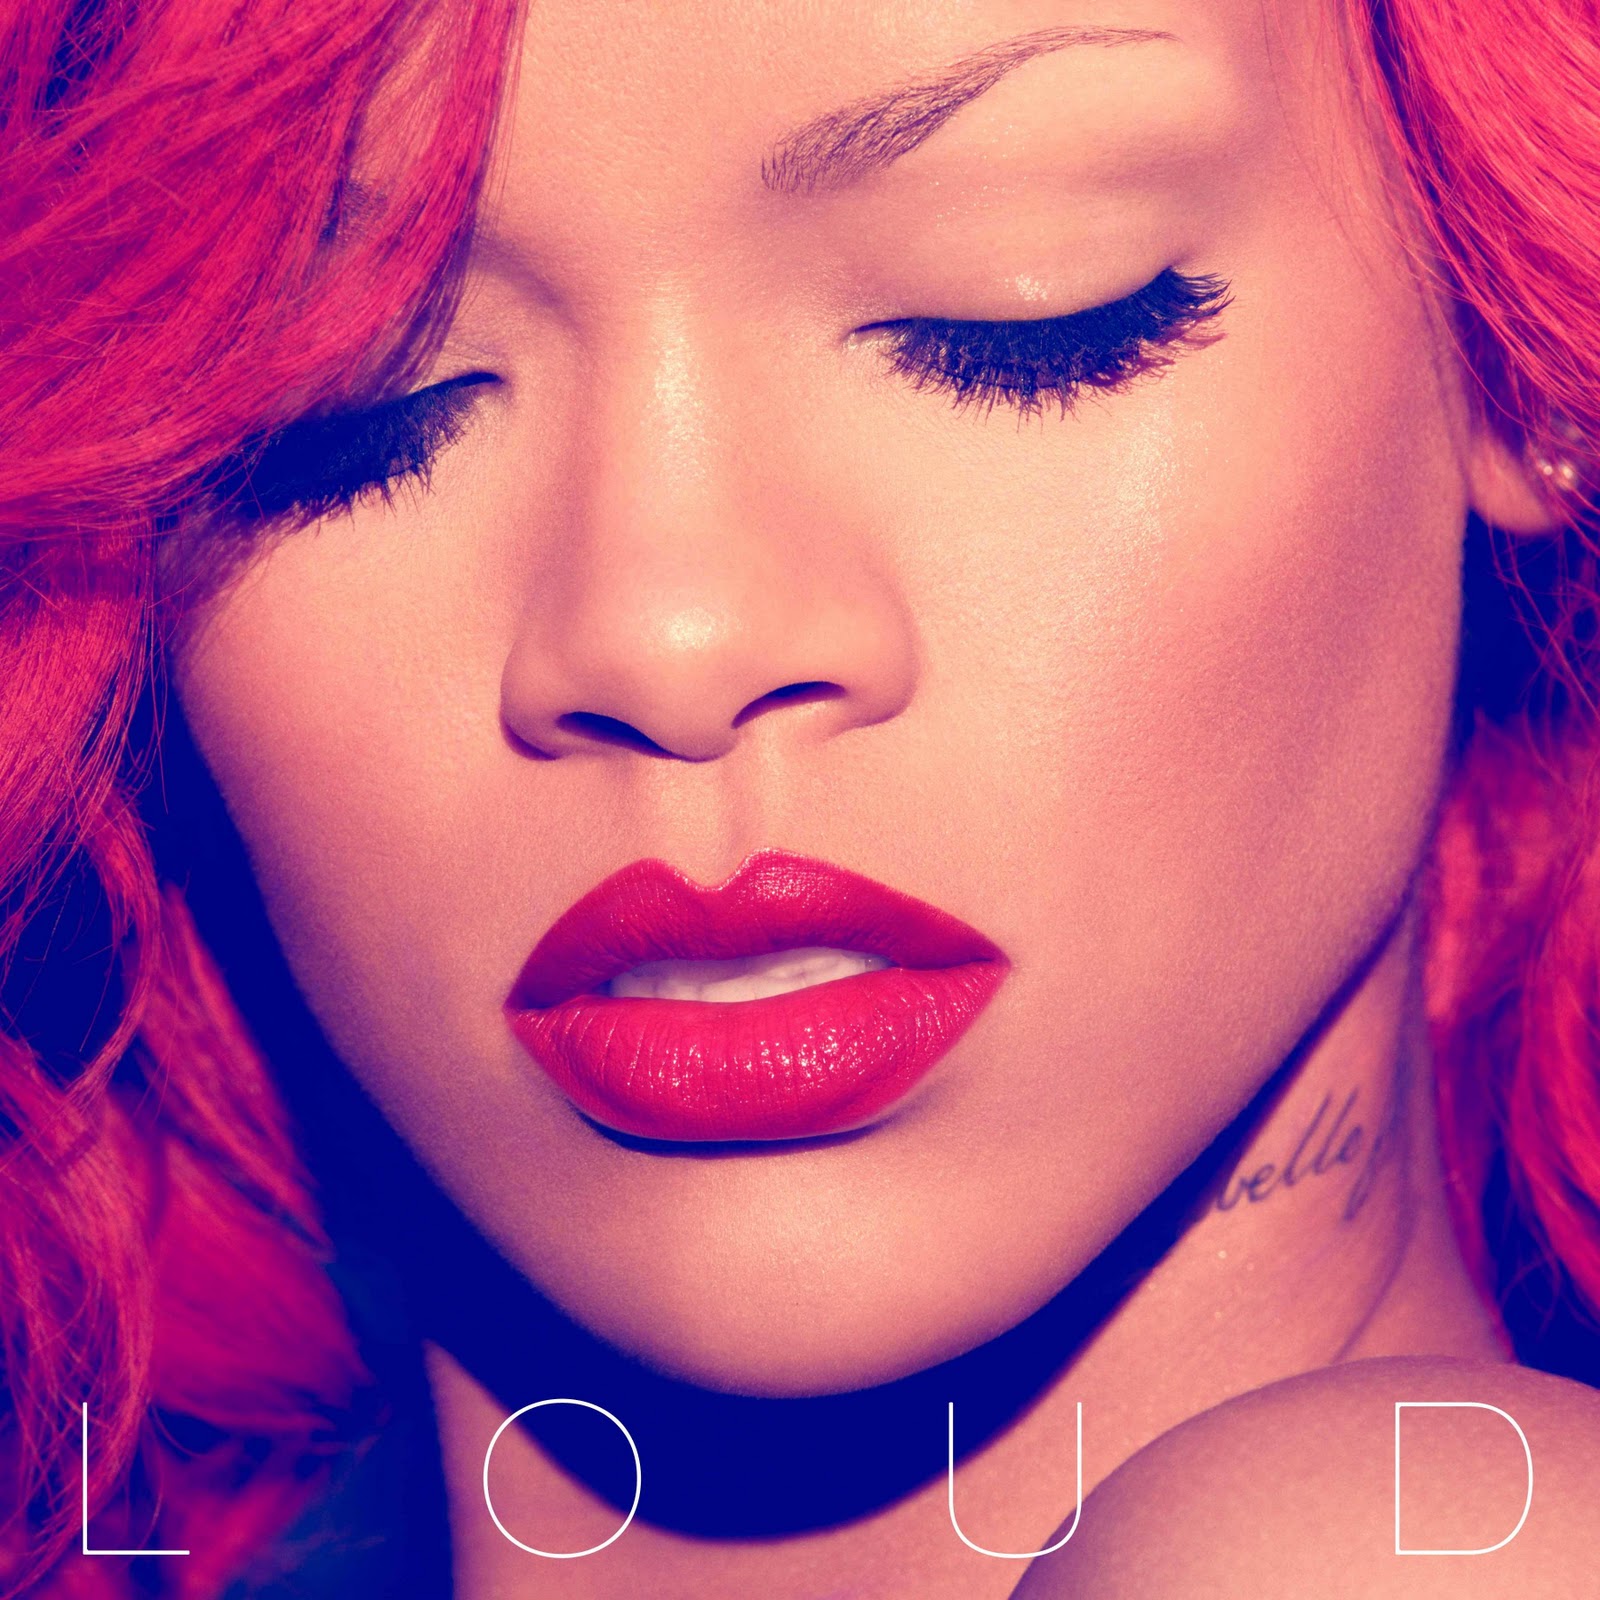 http://2.bp.blogspot.com/_lgTyldTrebU/TOcKf4TUQPI/AAAAAAAAABA/hNlgYlyIBxE/s1600/Rihanna-Loud-Album-Cover.jpg